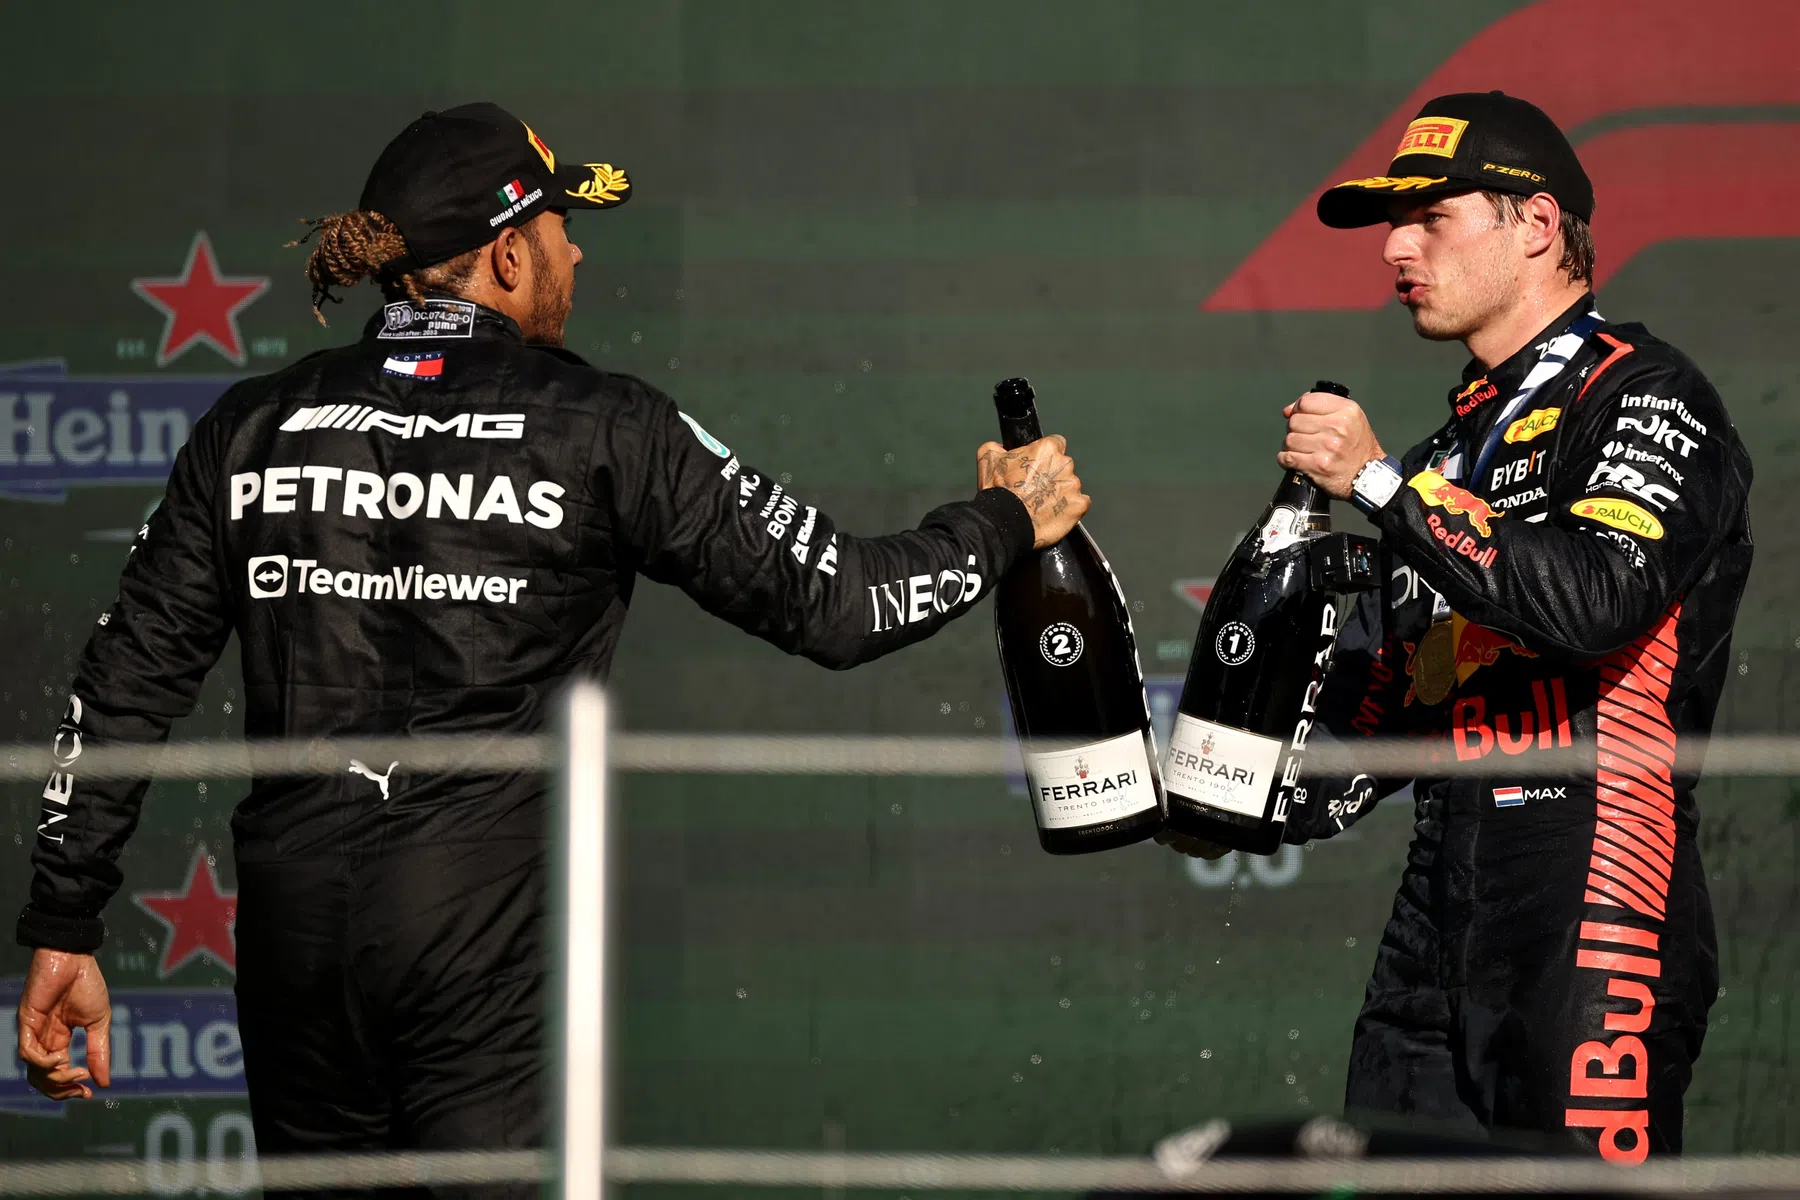 Johnny Herbert à propos de Max Verstappen et Lewis Hamilton dans une même équipe